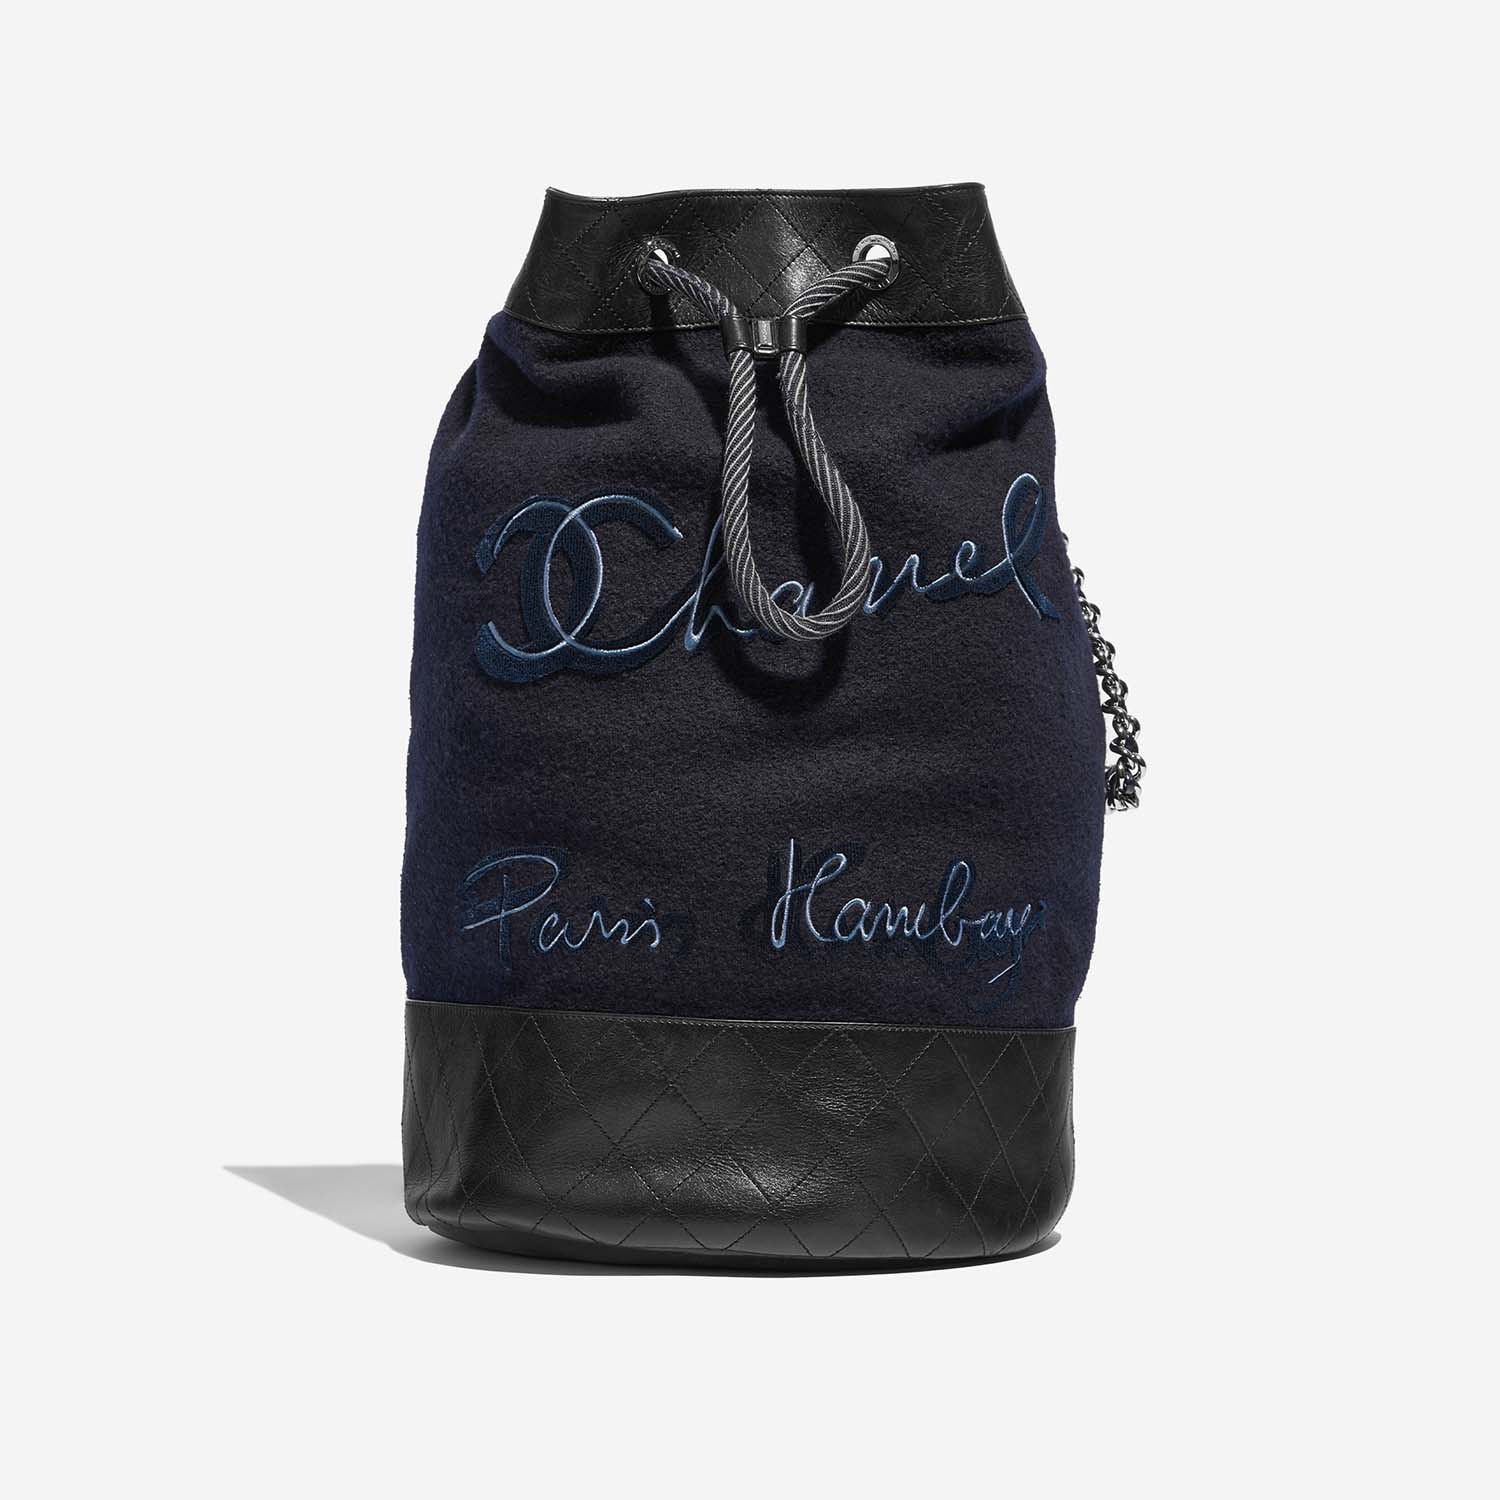 Chanel Rucksack Blau-Schwarz Front | Verkaufen Sie Ihre Designer-Tasche auf Saclab.com